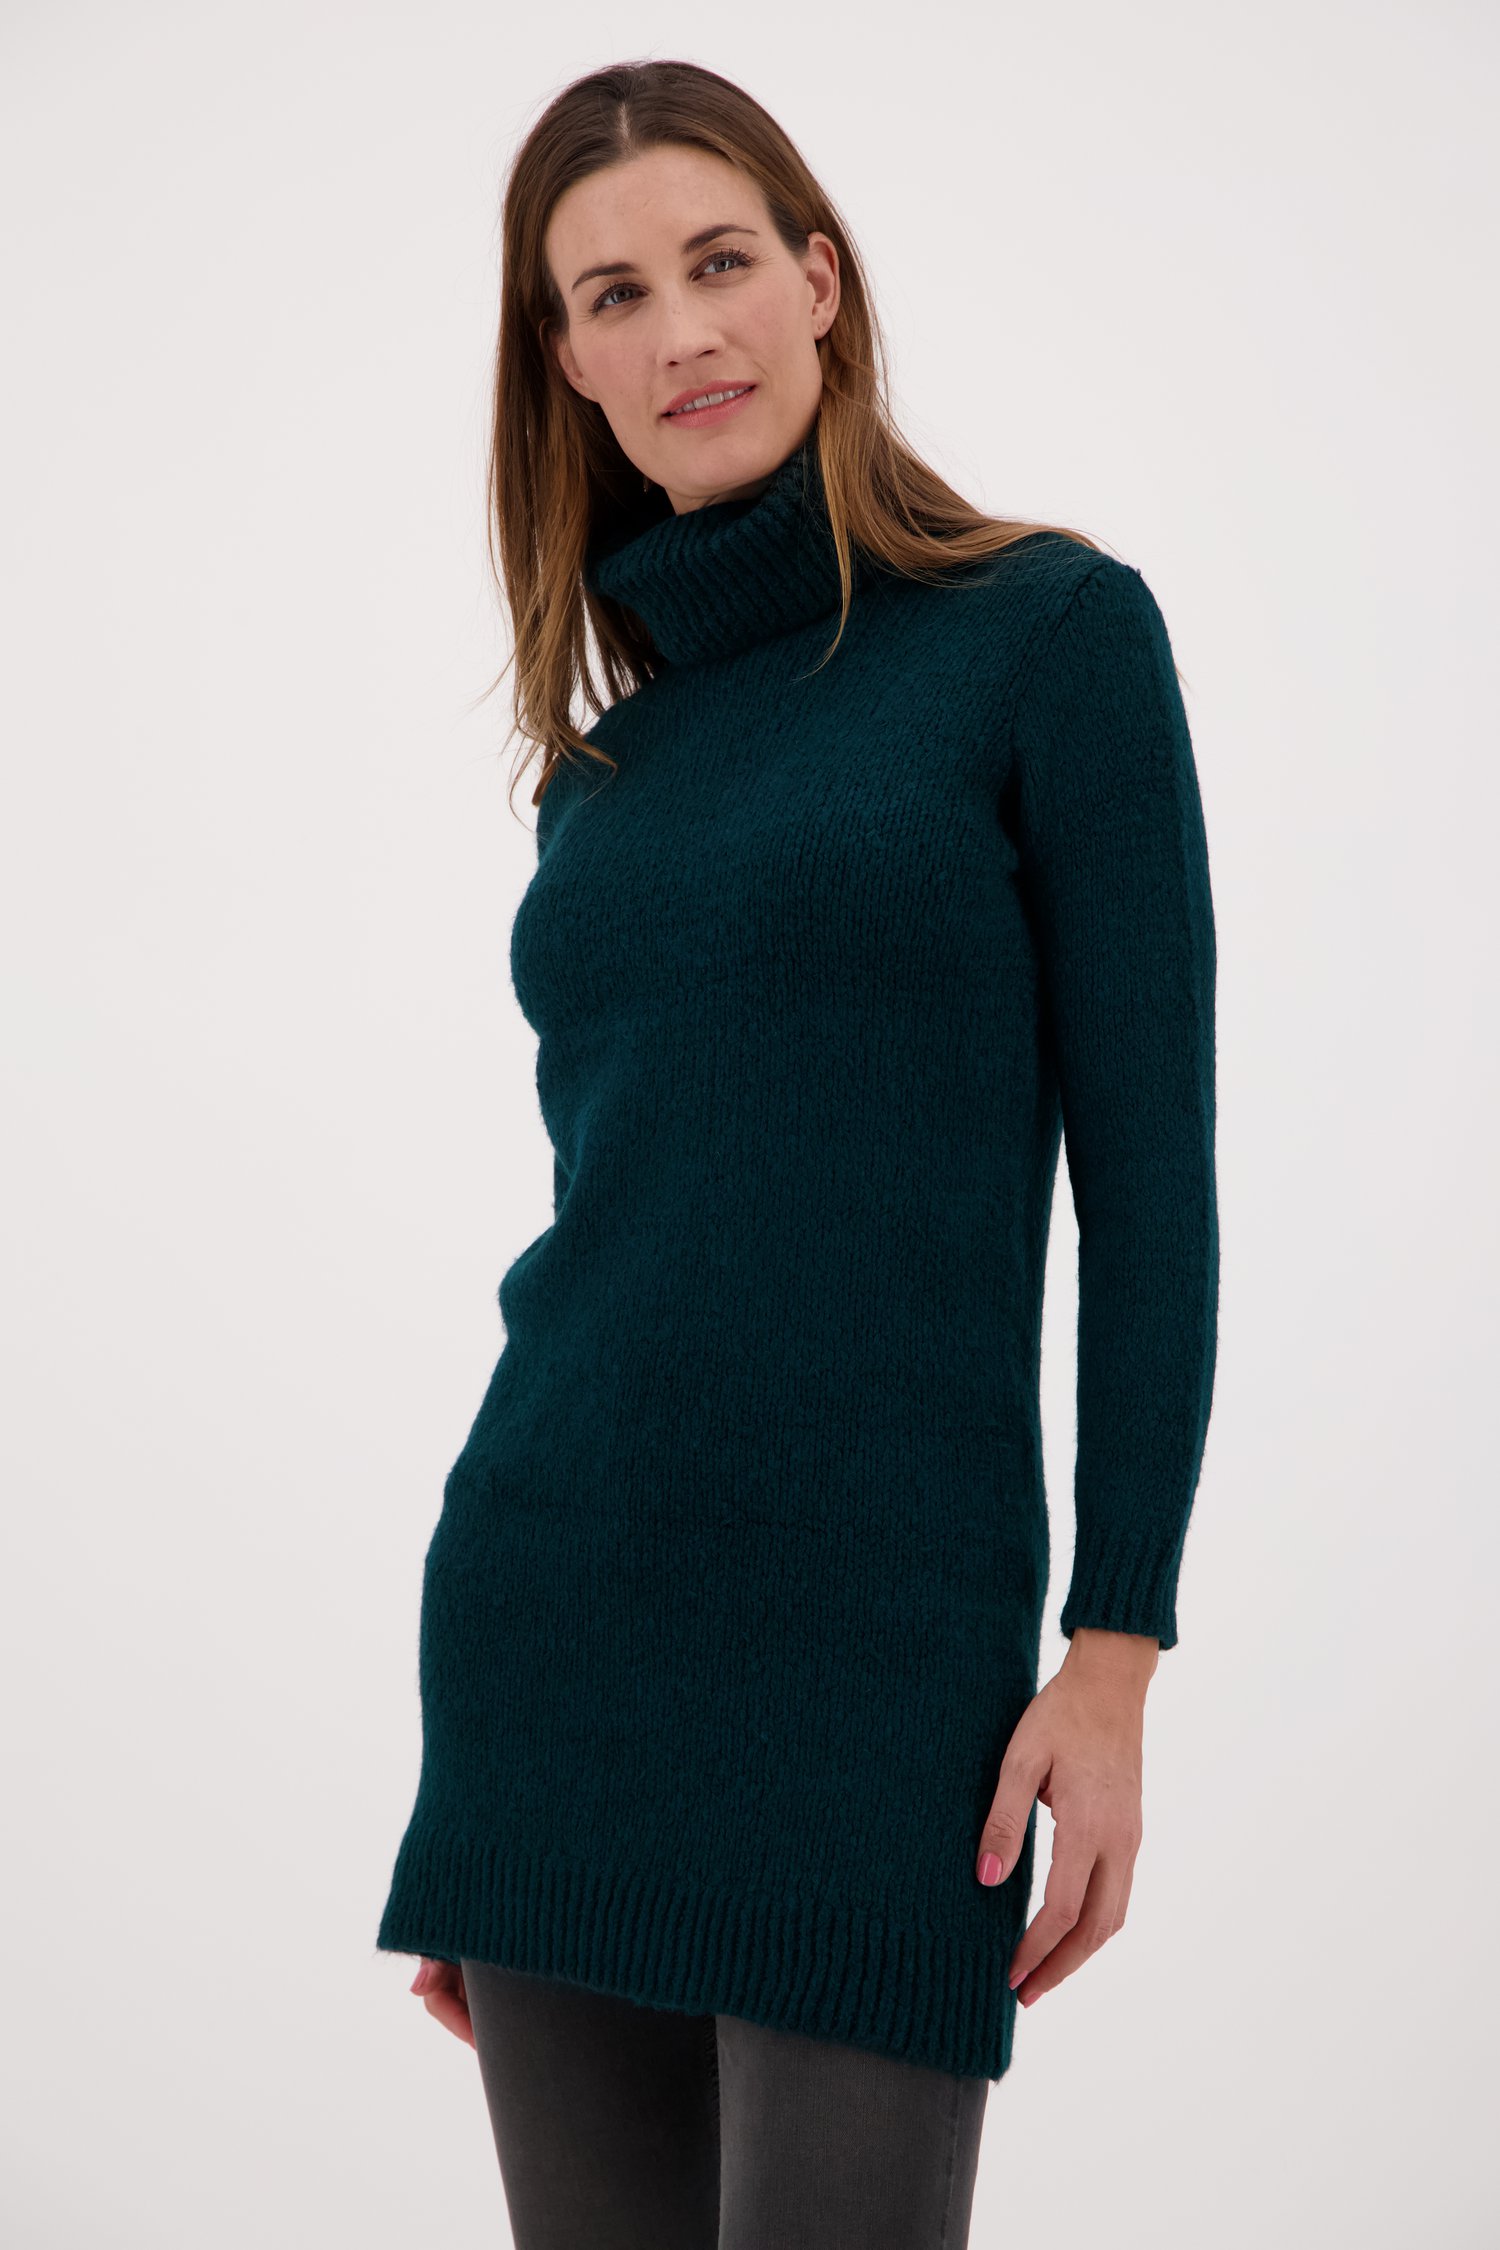 Robe en tricot vert-bleu à col roulé de JDY pour Femmes